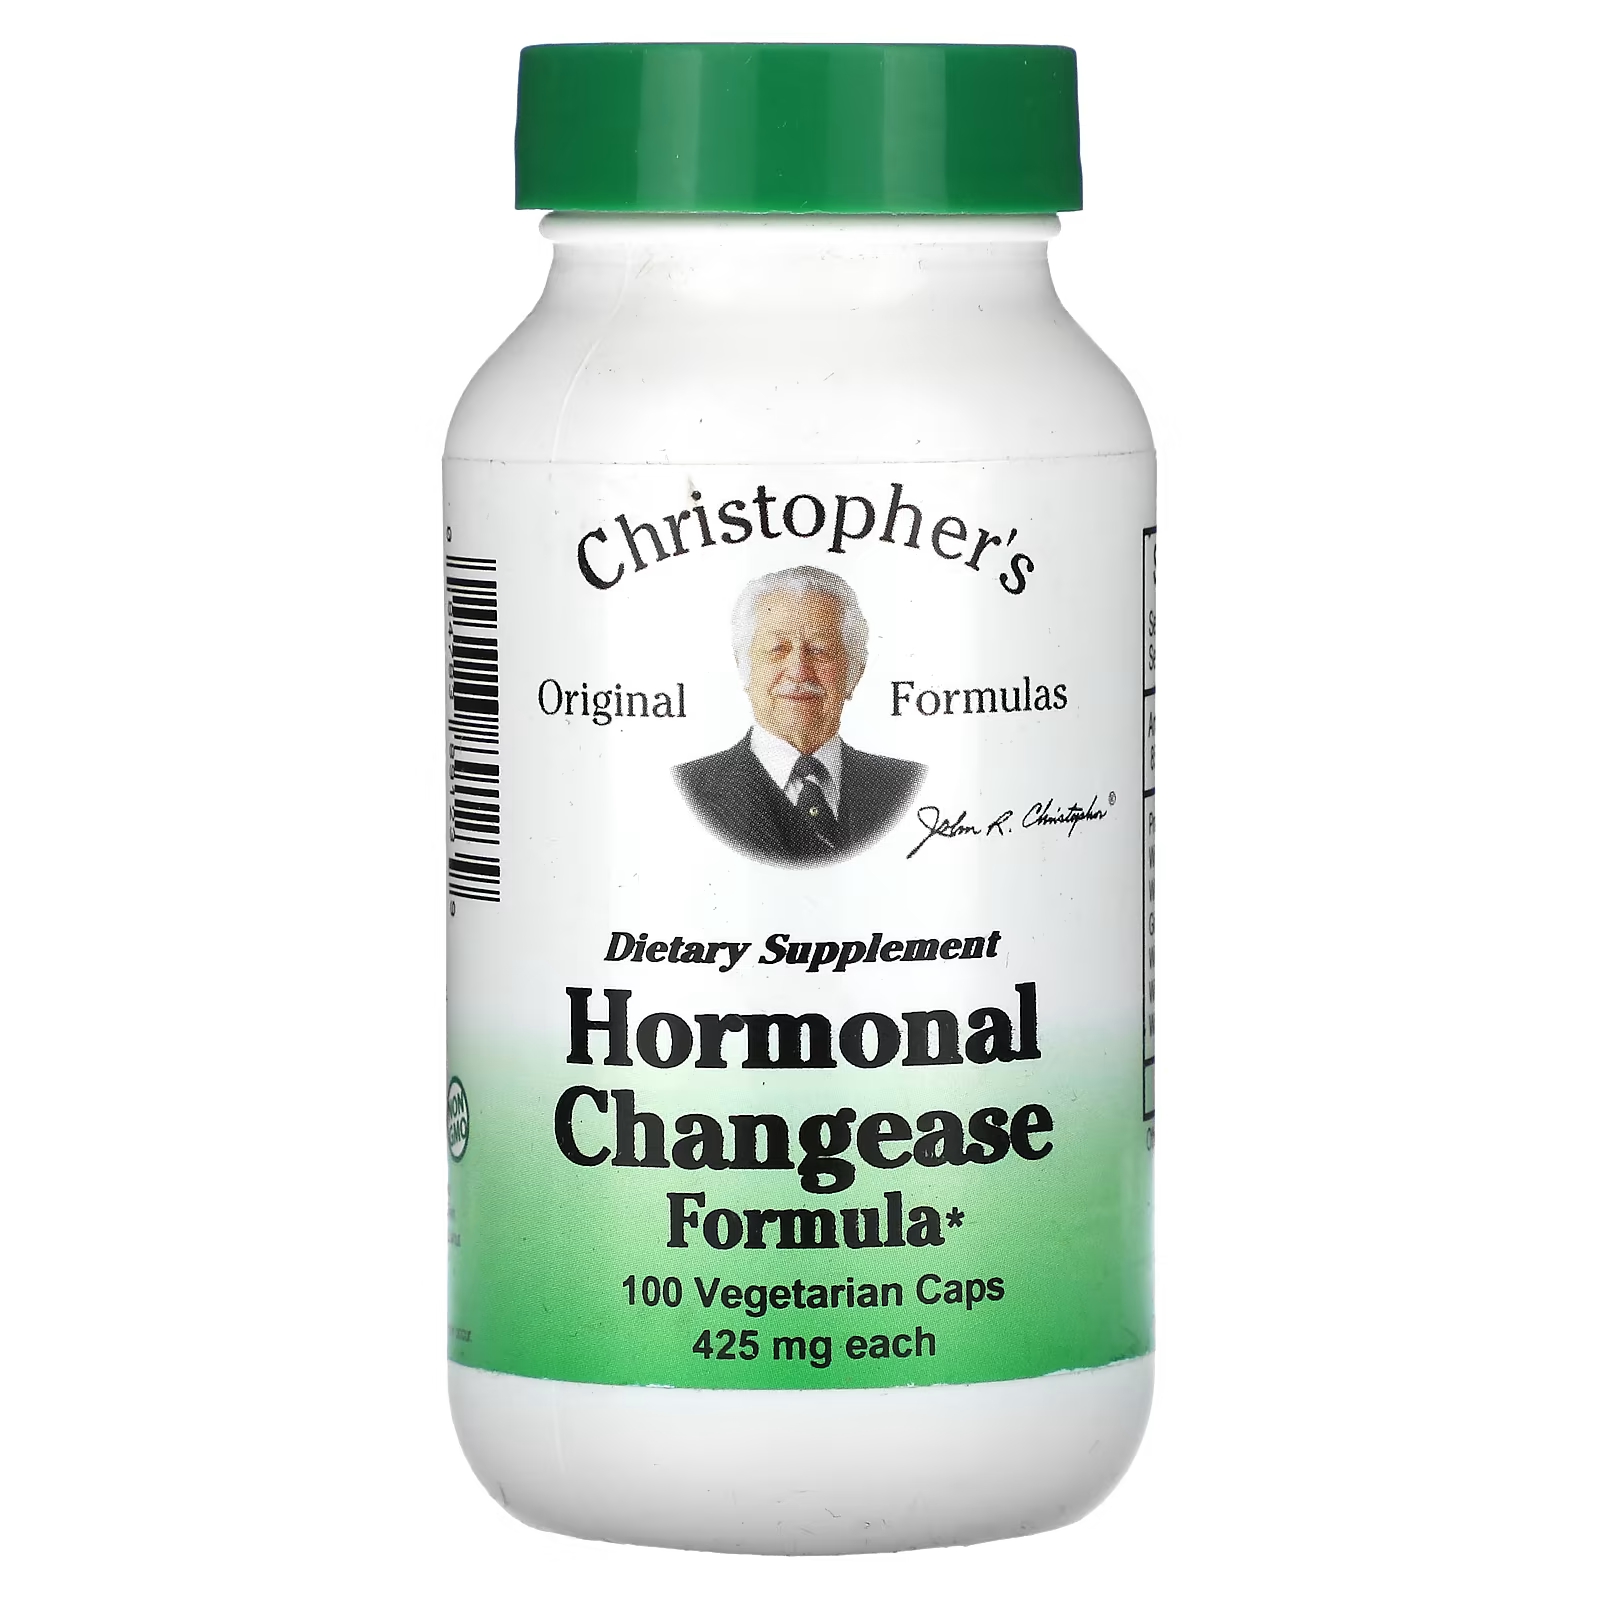 Гормональная формула изменения Christopher's Original Formulas 425 мг, 100 капсул christopher s original formulas средство для поддержки надпочечников 425 мг 100 вегетарианских капсул